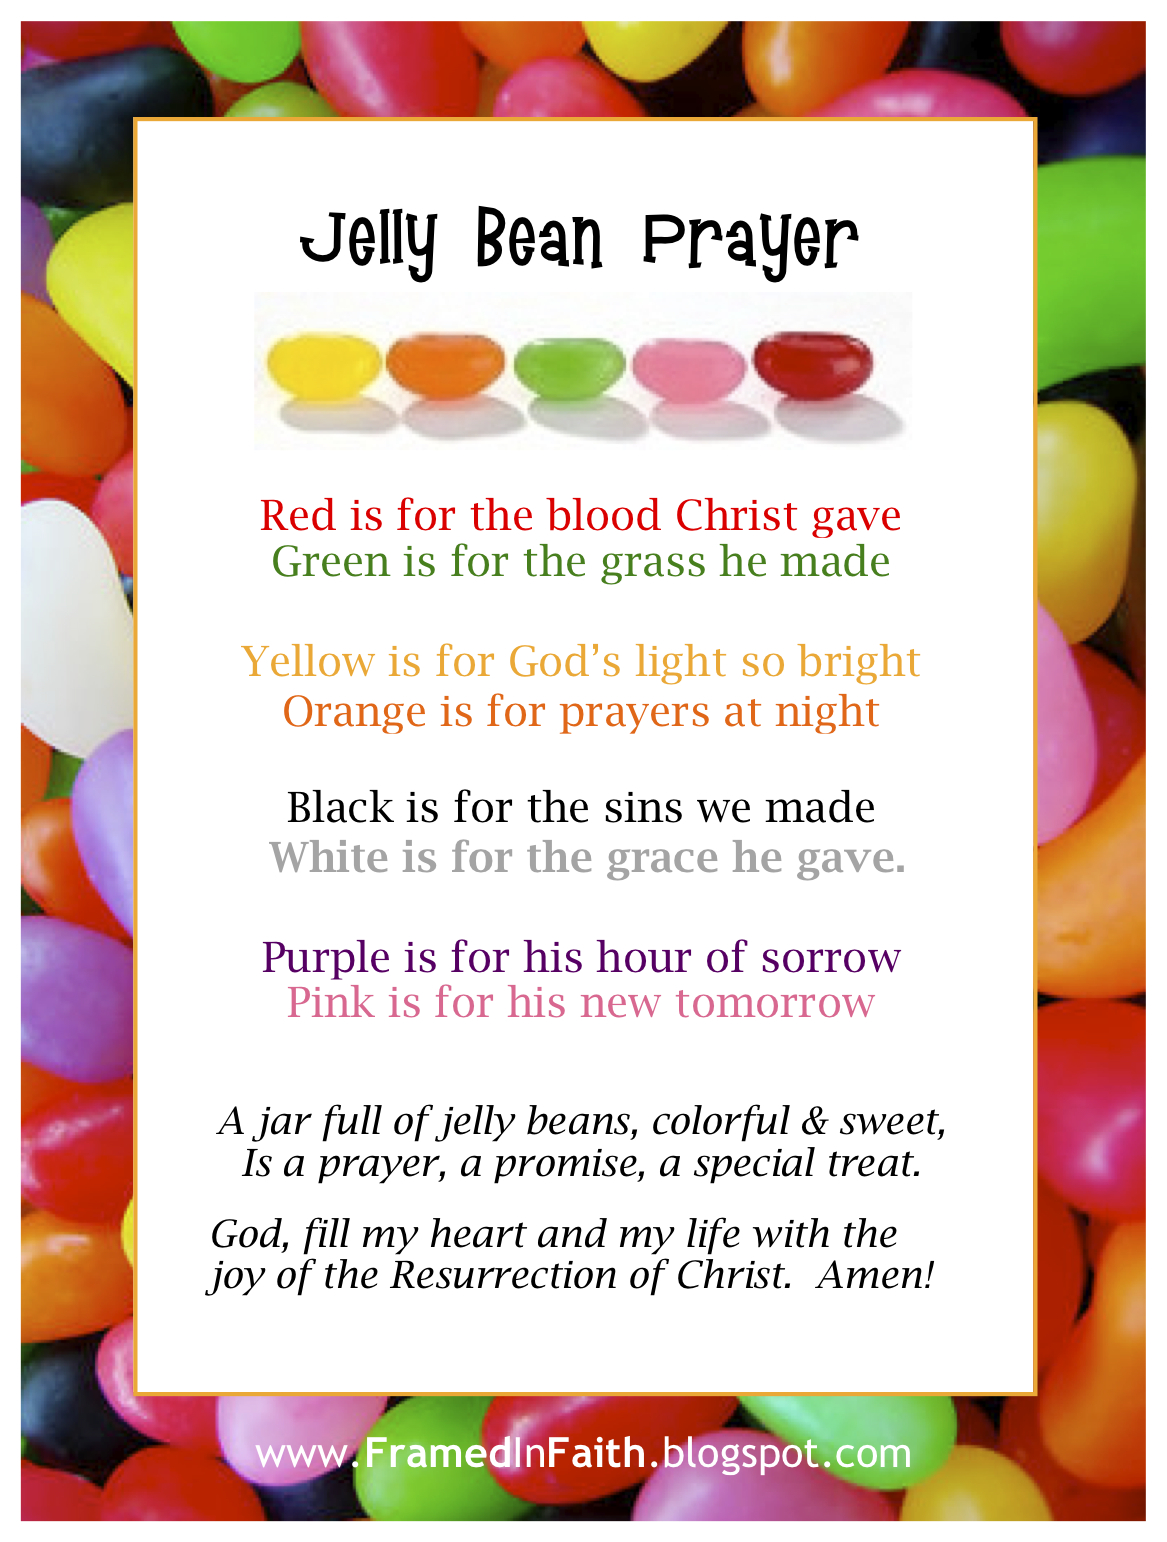 Framed in Faith Jelly Beans & Jesus